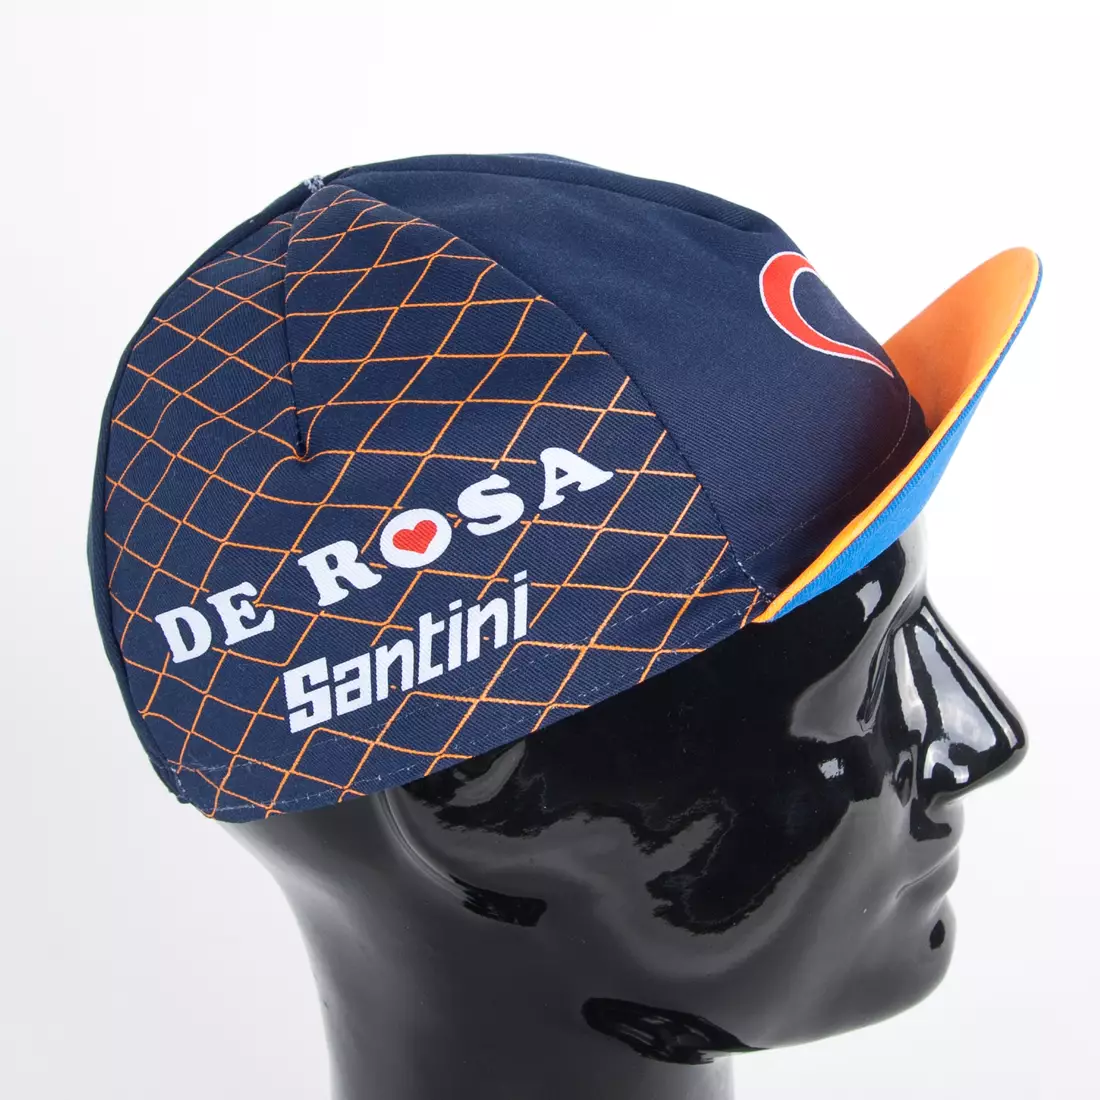 Apis Profi cycling cap DE ROSA SANTINI orange visor v1